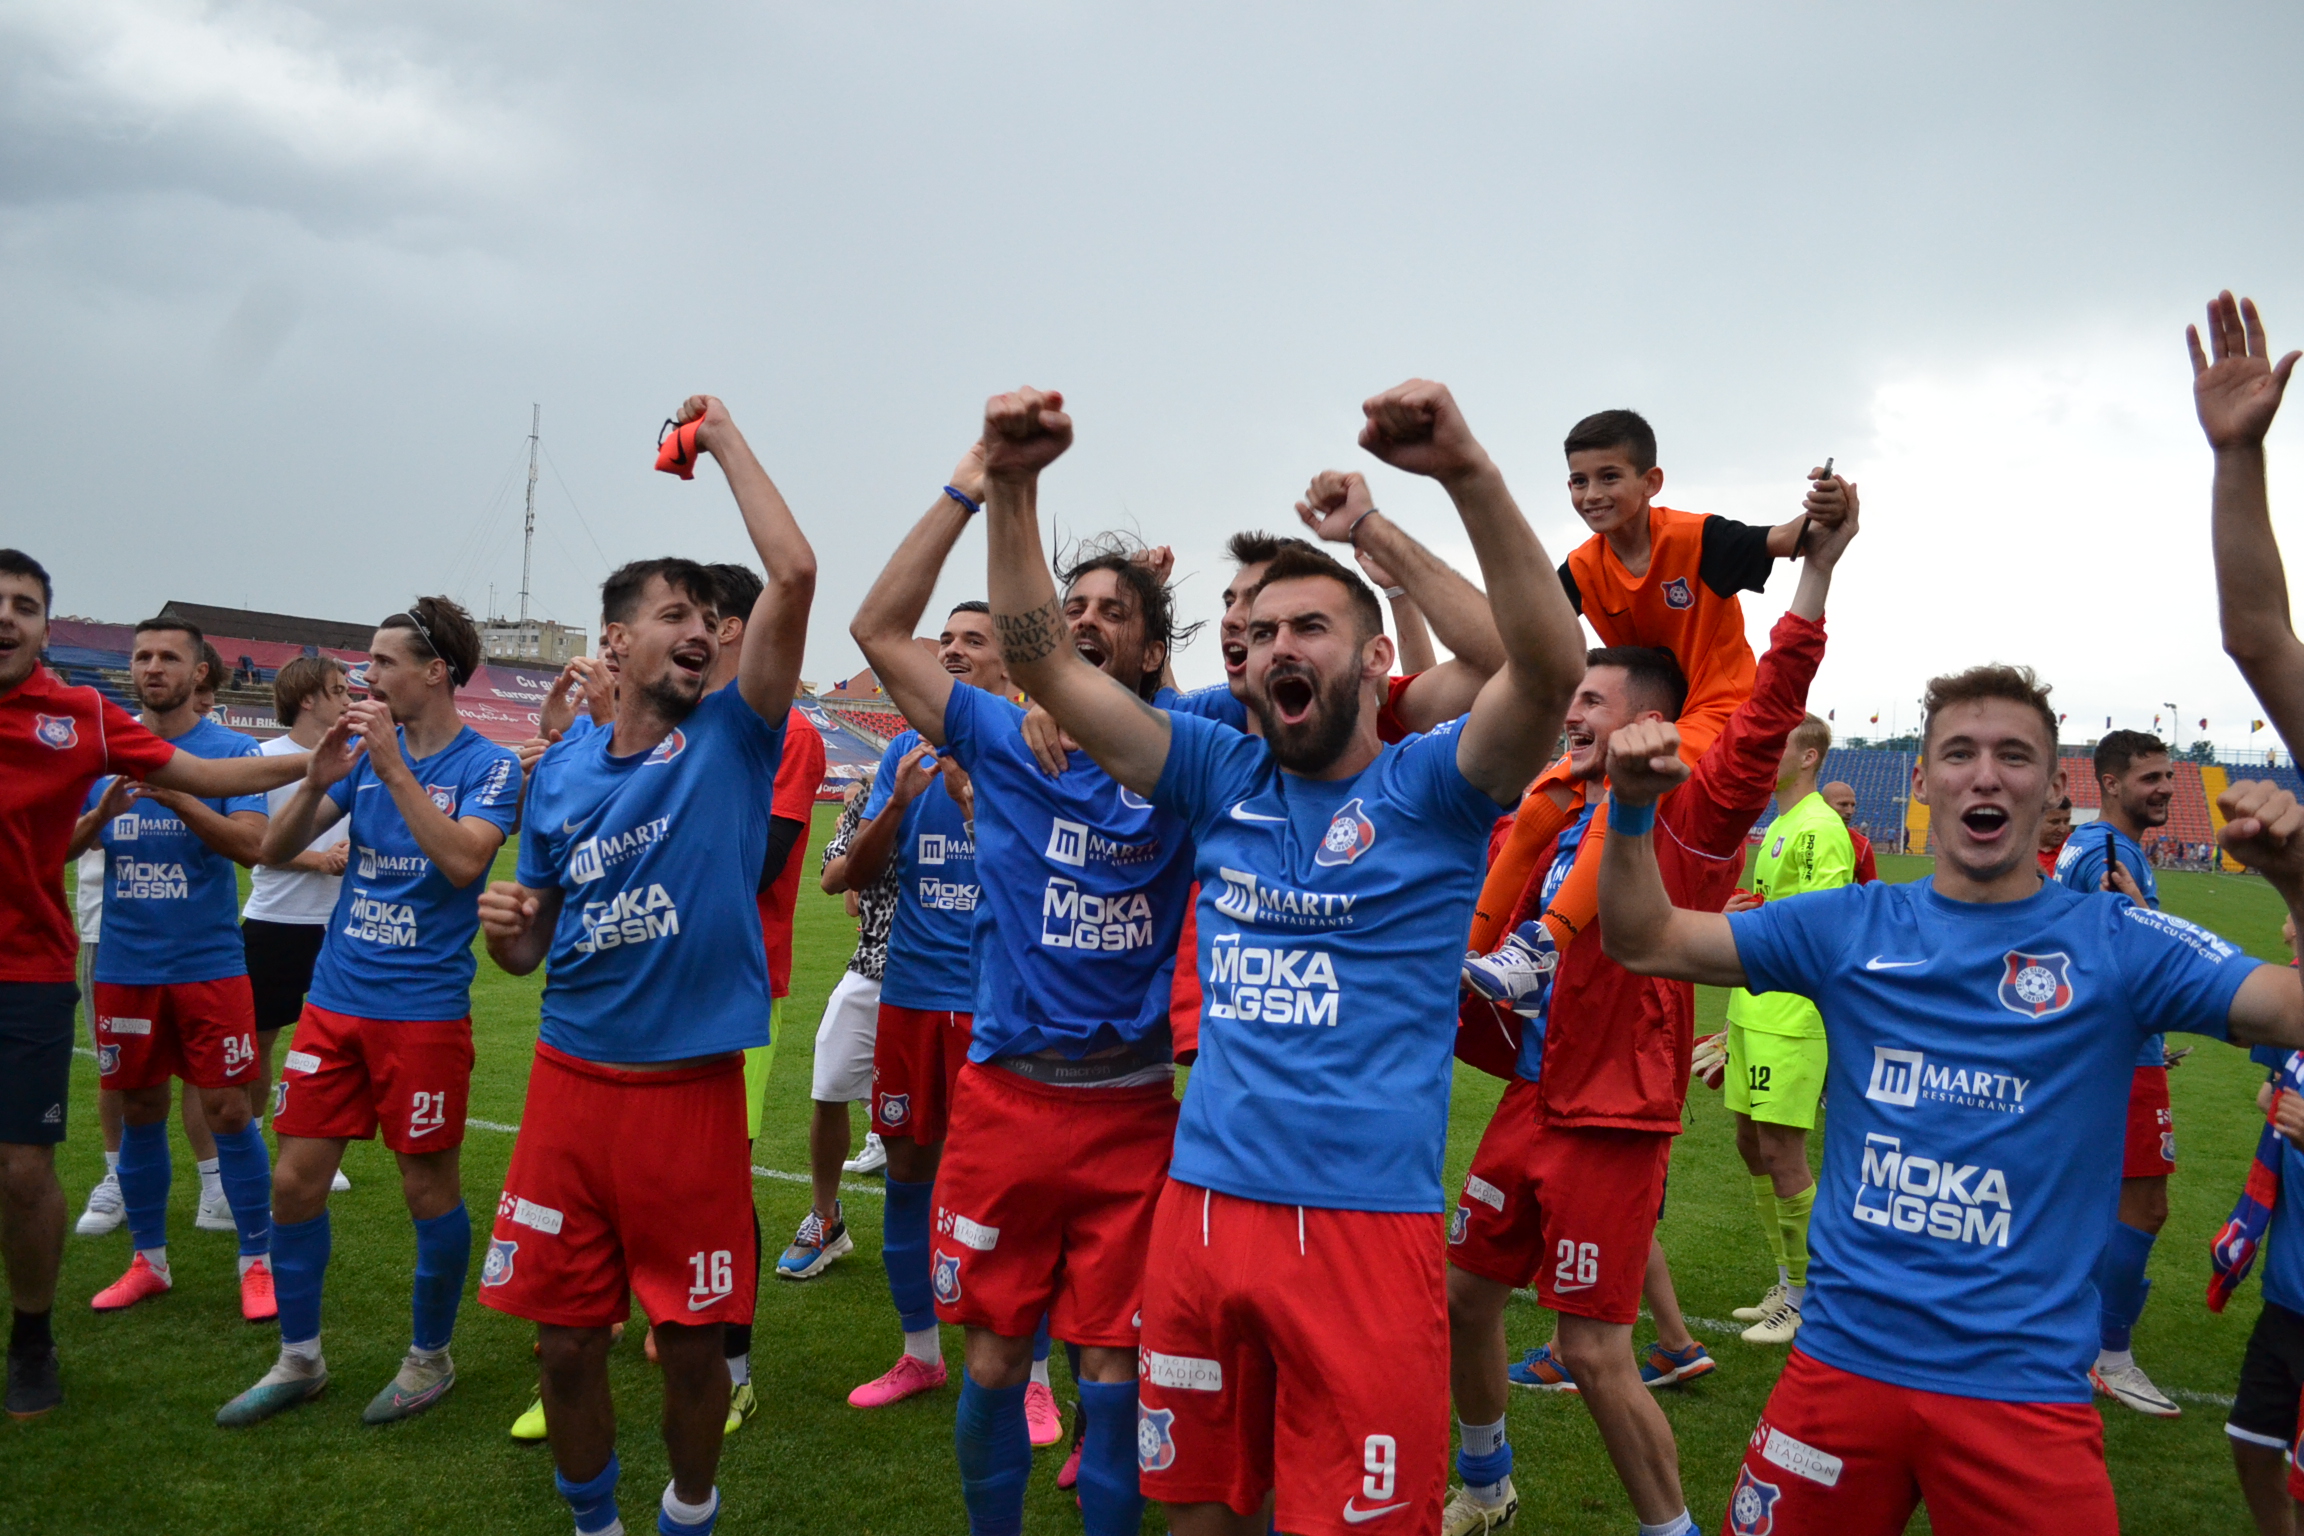 FOTO: Bucuria jucătorilor de la FC Bihor foto Teodor Biriș